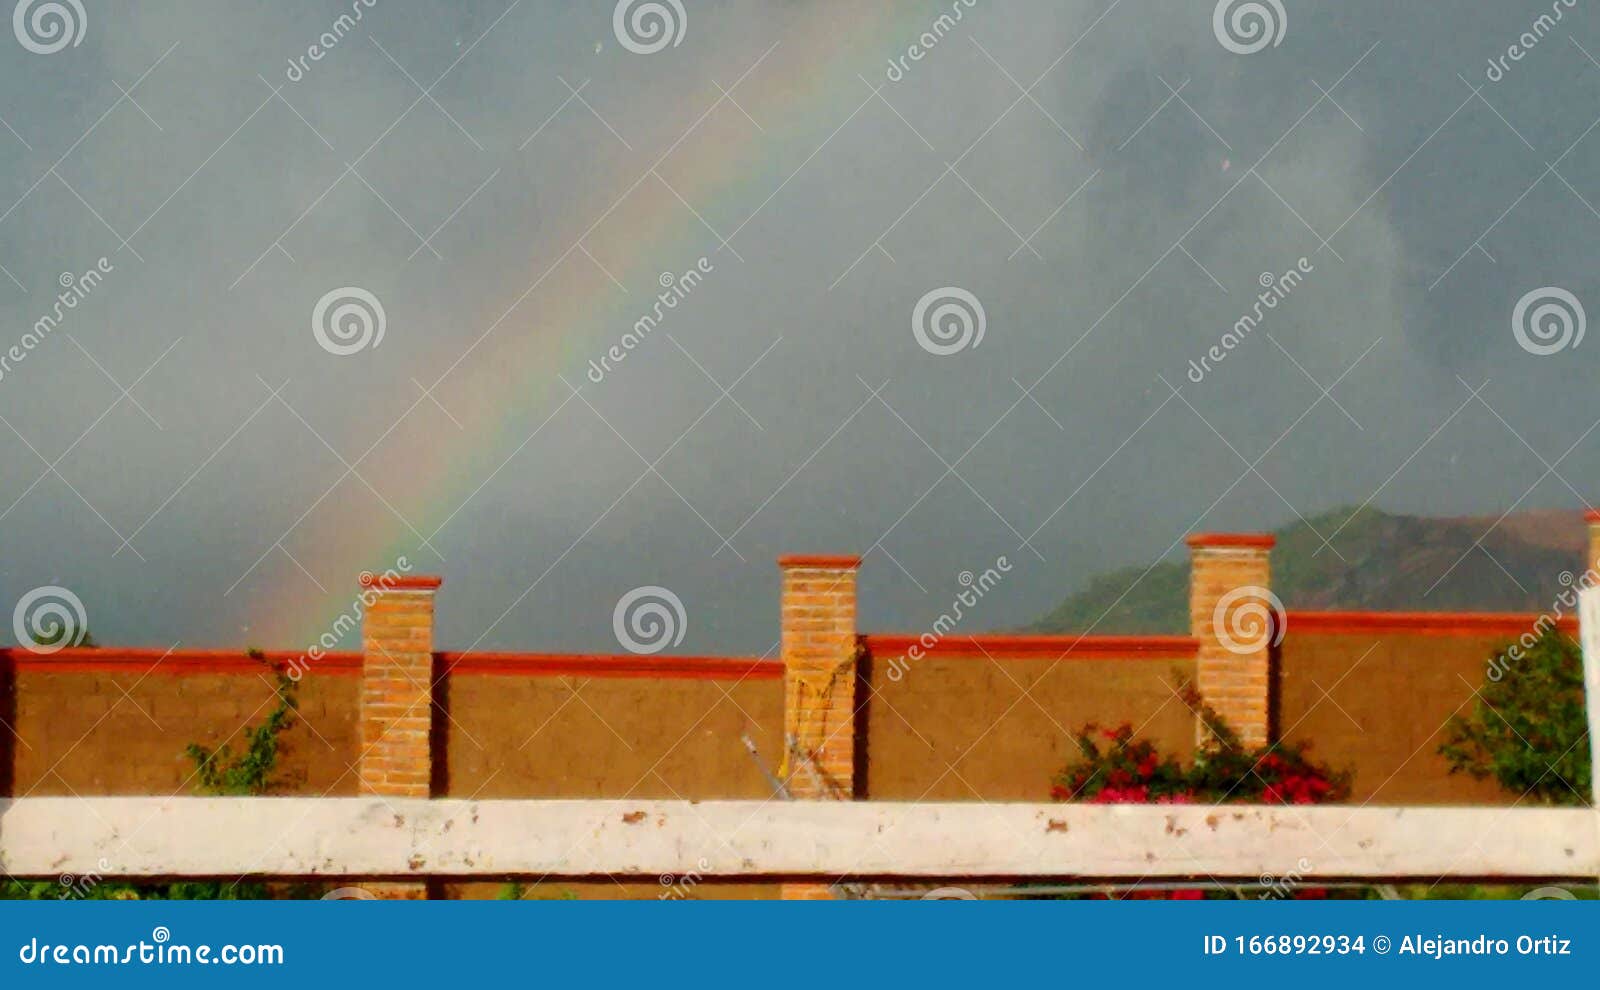 arcoiris en el rancho mientras llueve